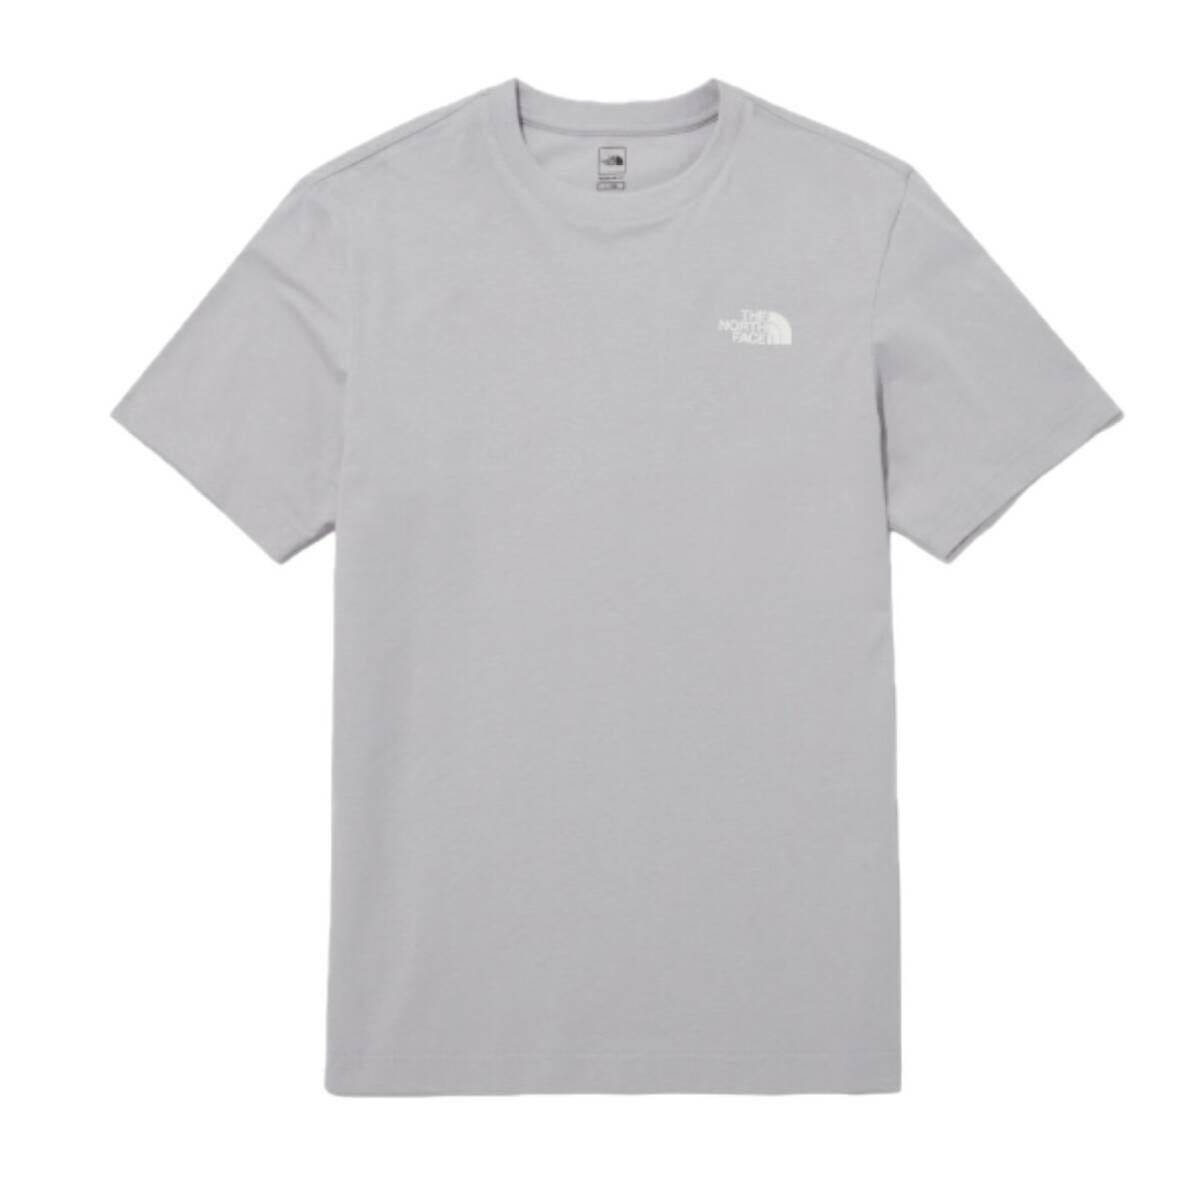 ザ ノースフェイス Tシャツ NT7U ライトグレー Mサイズ コットン素材 クルーネック シンプルロゴ THE NORTH FACE COTTON S/S TEE 新品